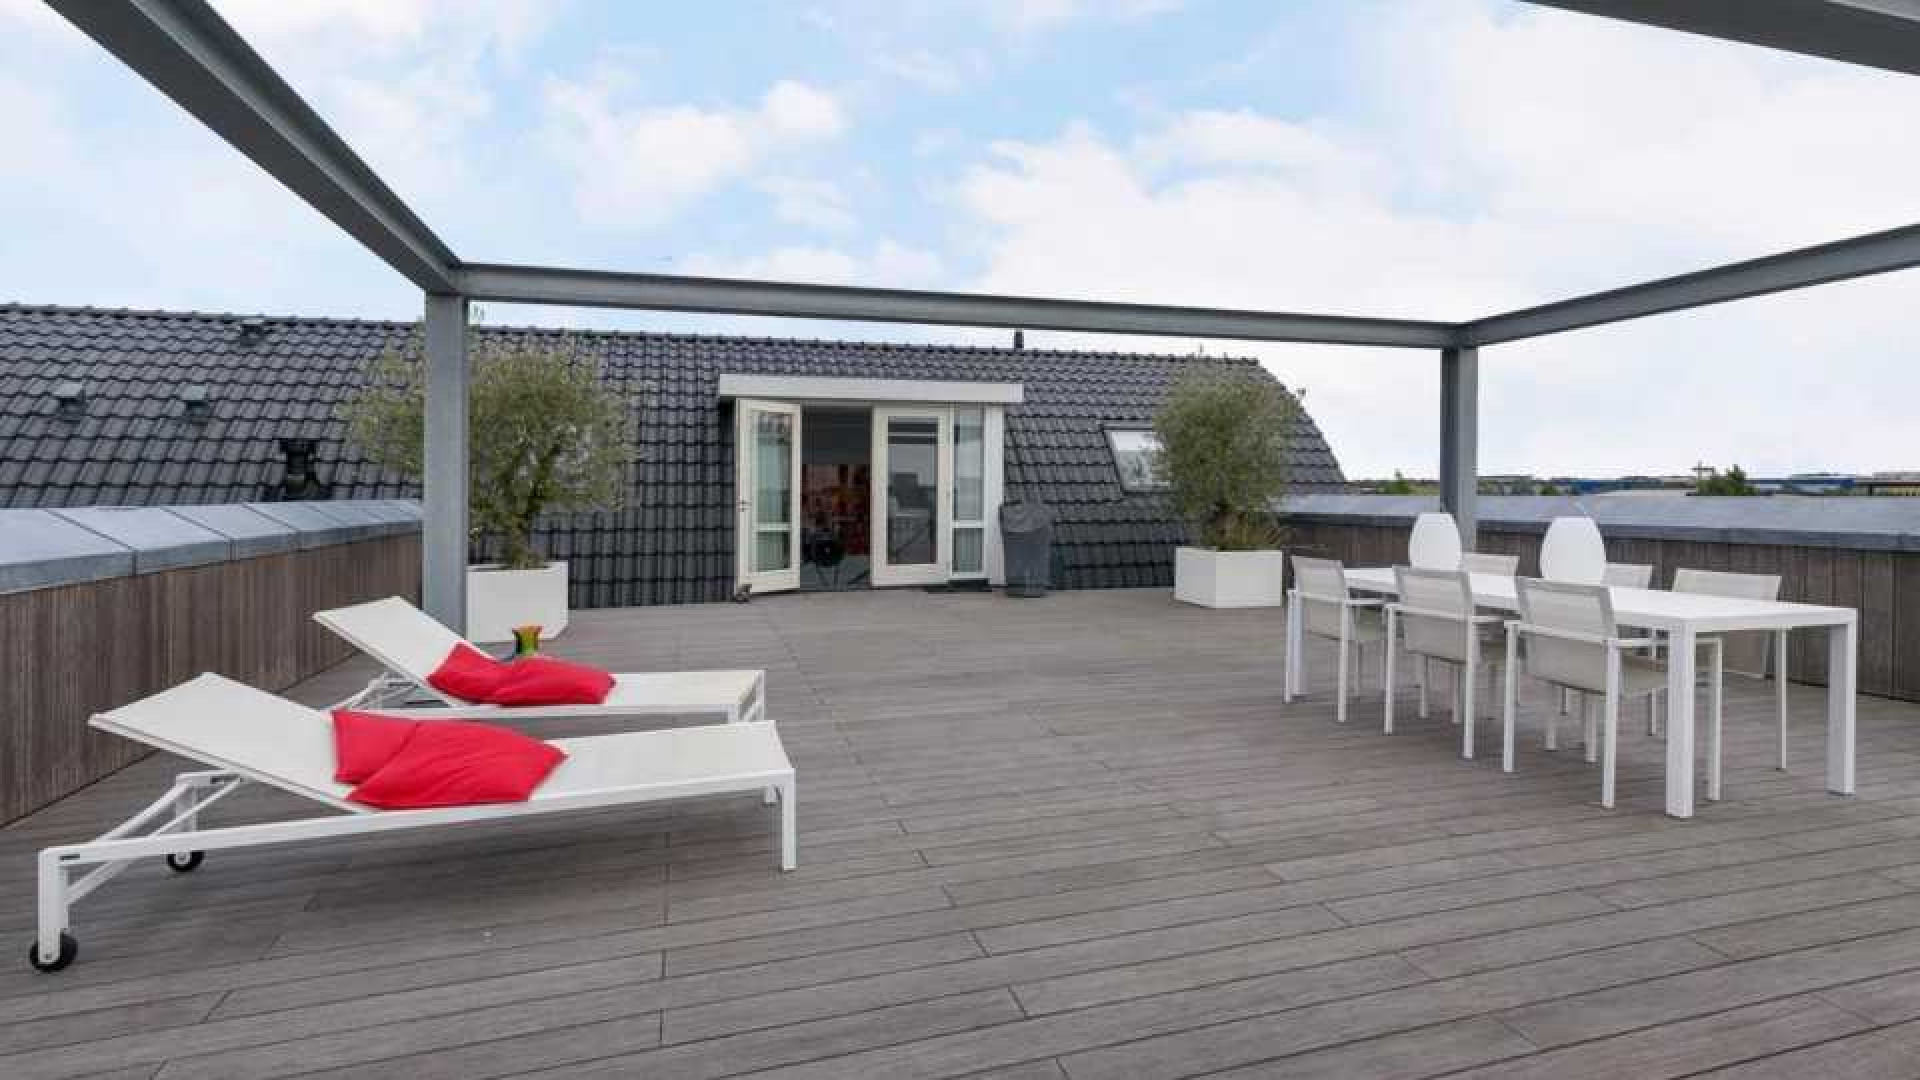 Binnenkijken in het waanzinnig luxe penthouse van Nederlands Elftal speler Denzel Dumfries. Zie foto's